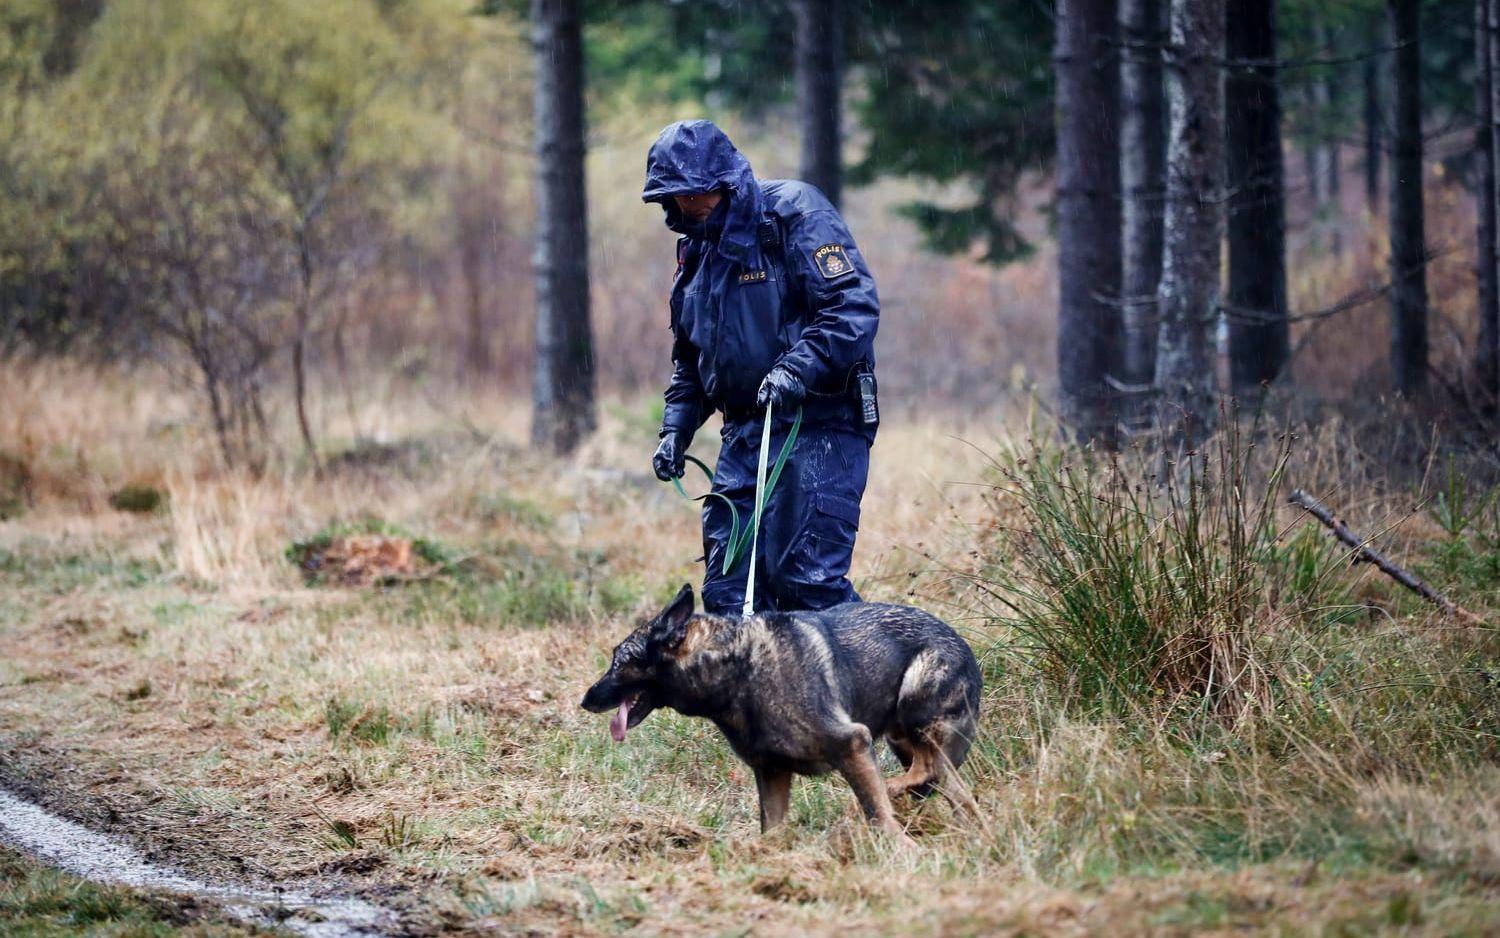 Kvinnan hittades av en hundpatrull i skogen kort efter att hennes glasögon anträffades längs milspåret i friluftsområdet. Foto: TT